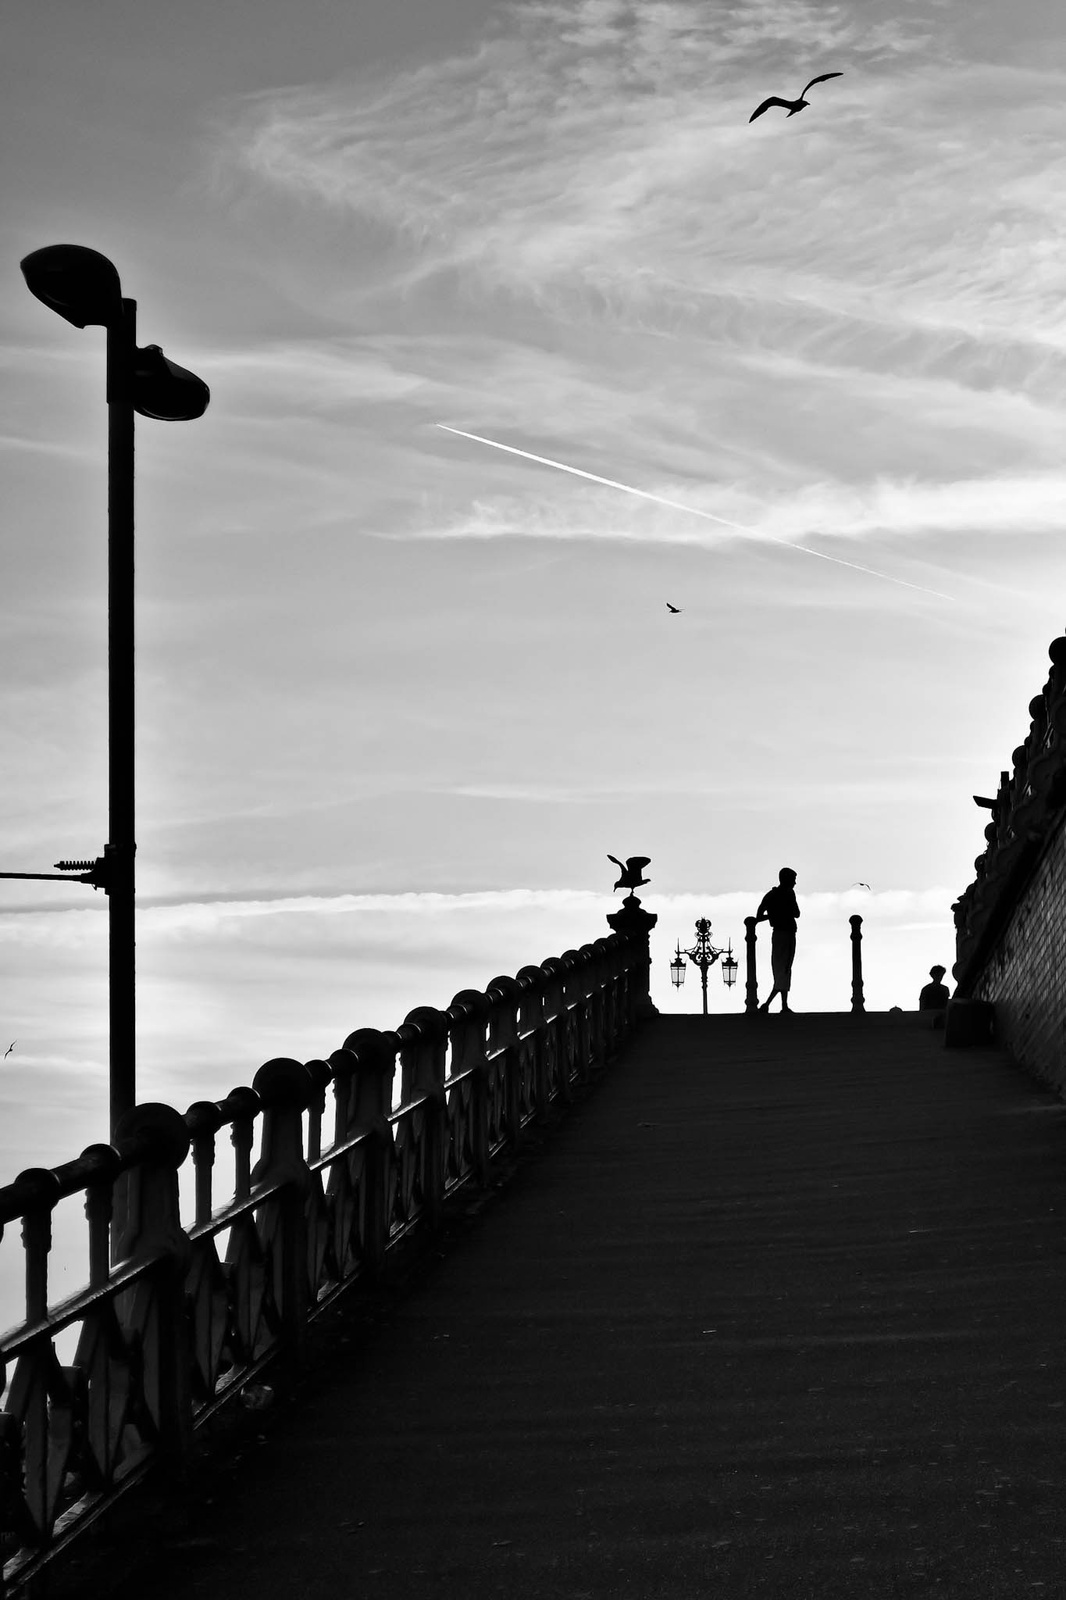 Brighton-i villámlátogatás 20130604 268-Edit-2-Edit-3